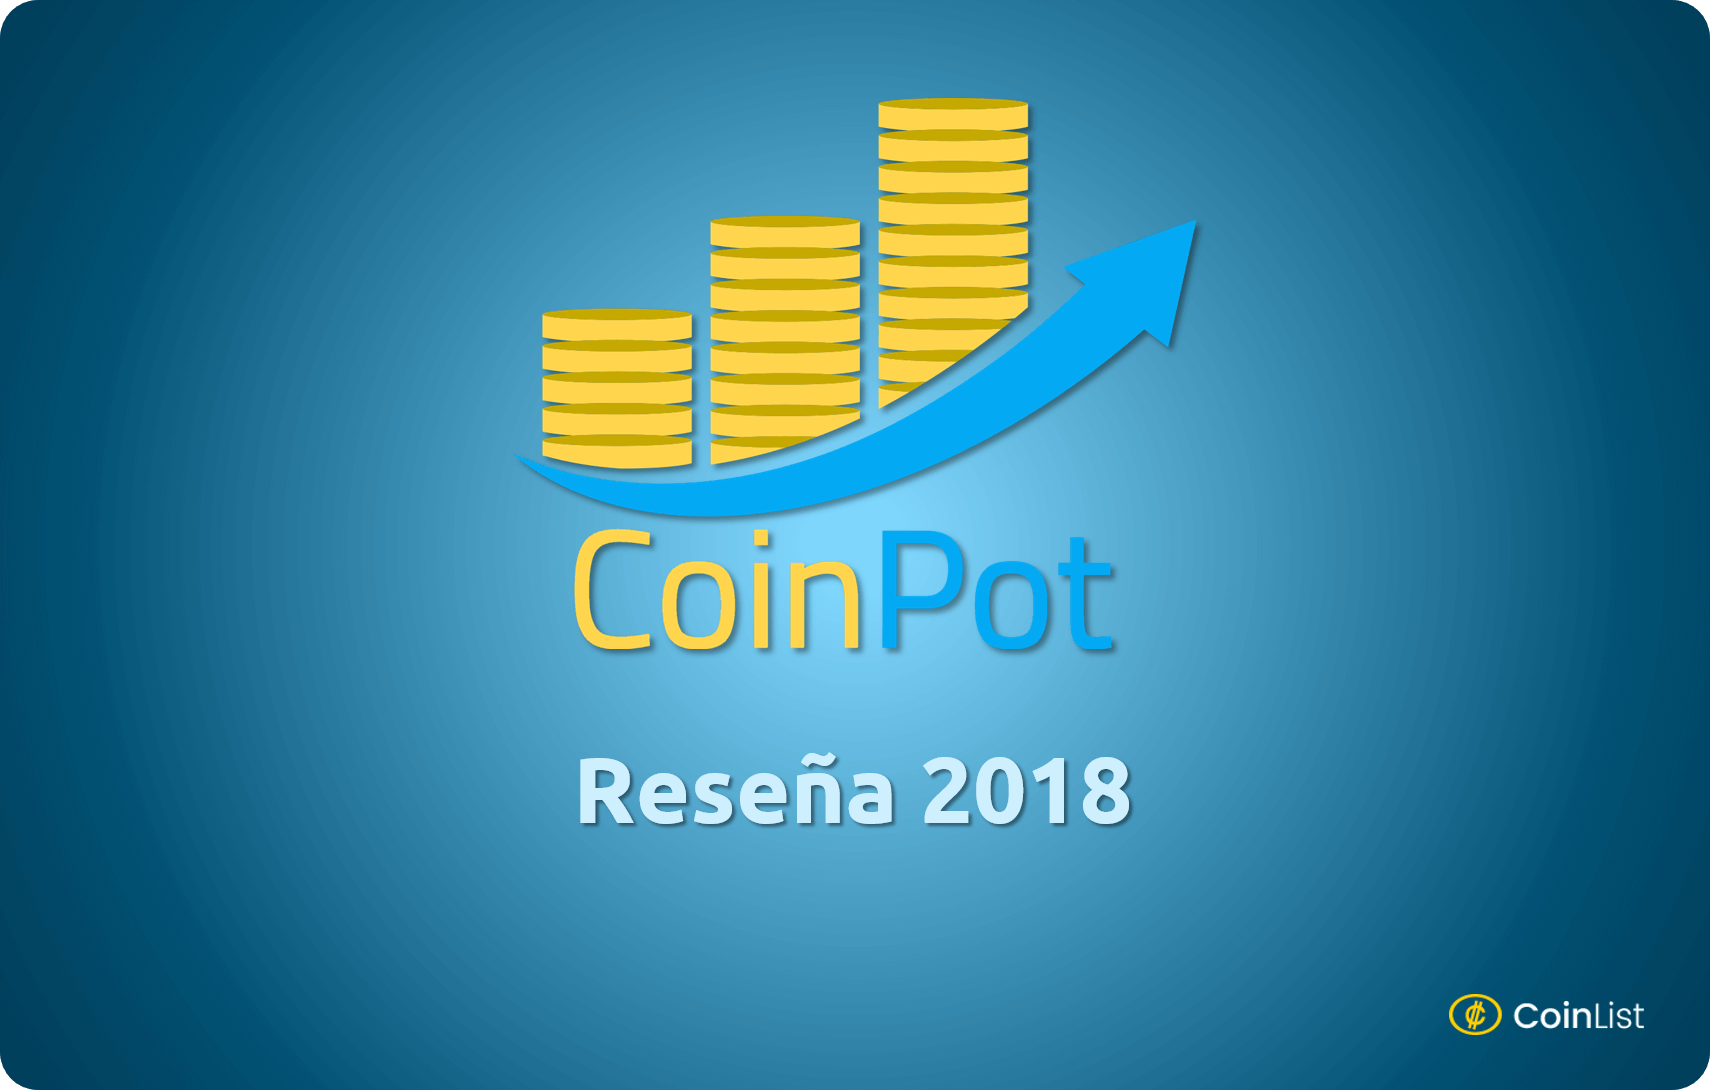 CoinPot Reseña 2018